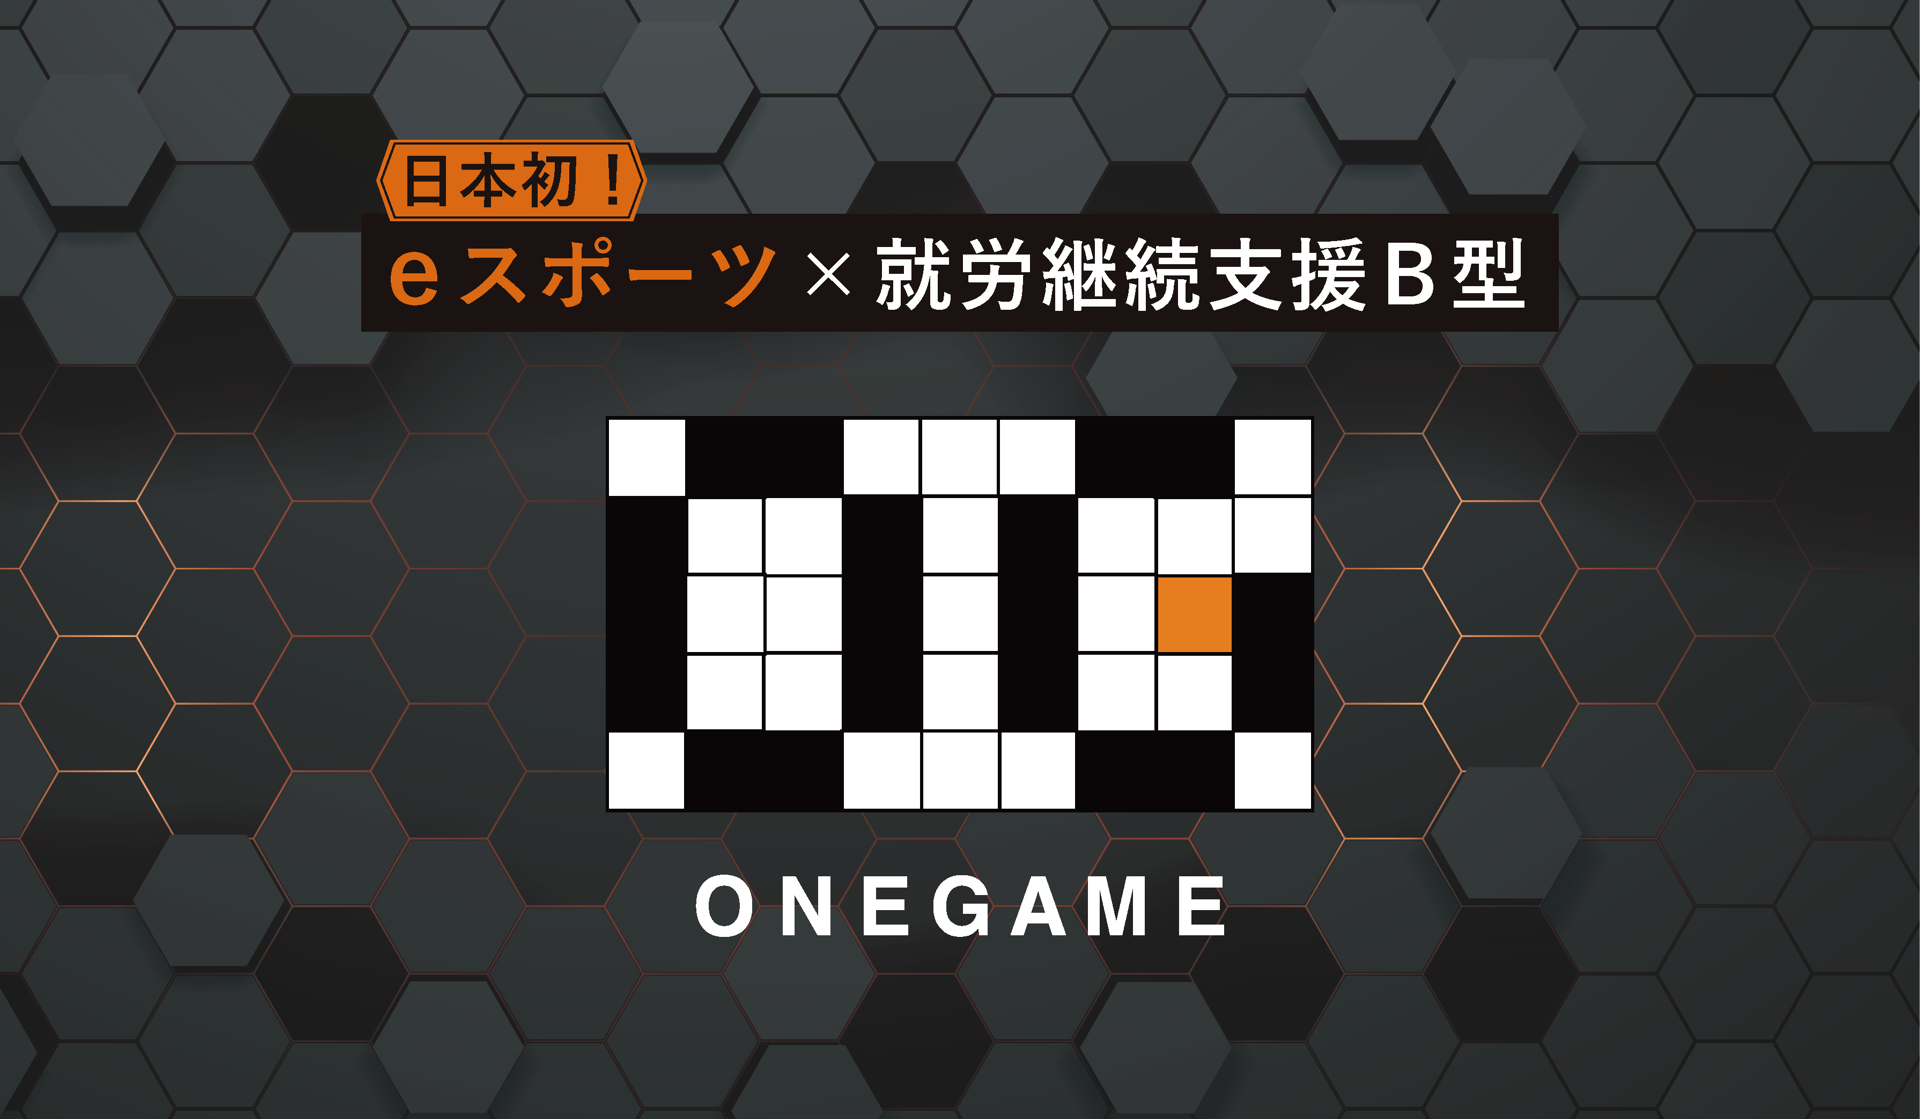 onegame説明会-1